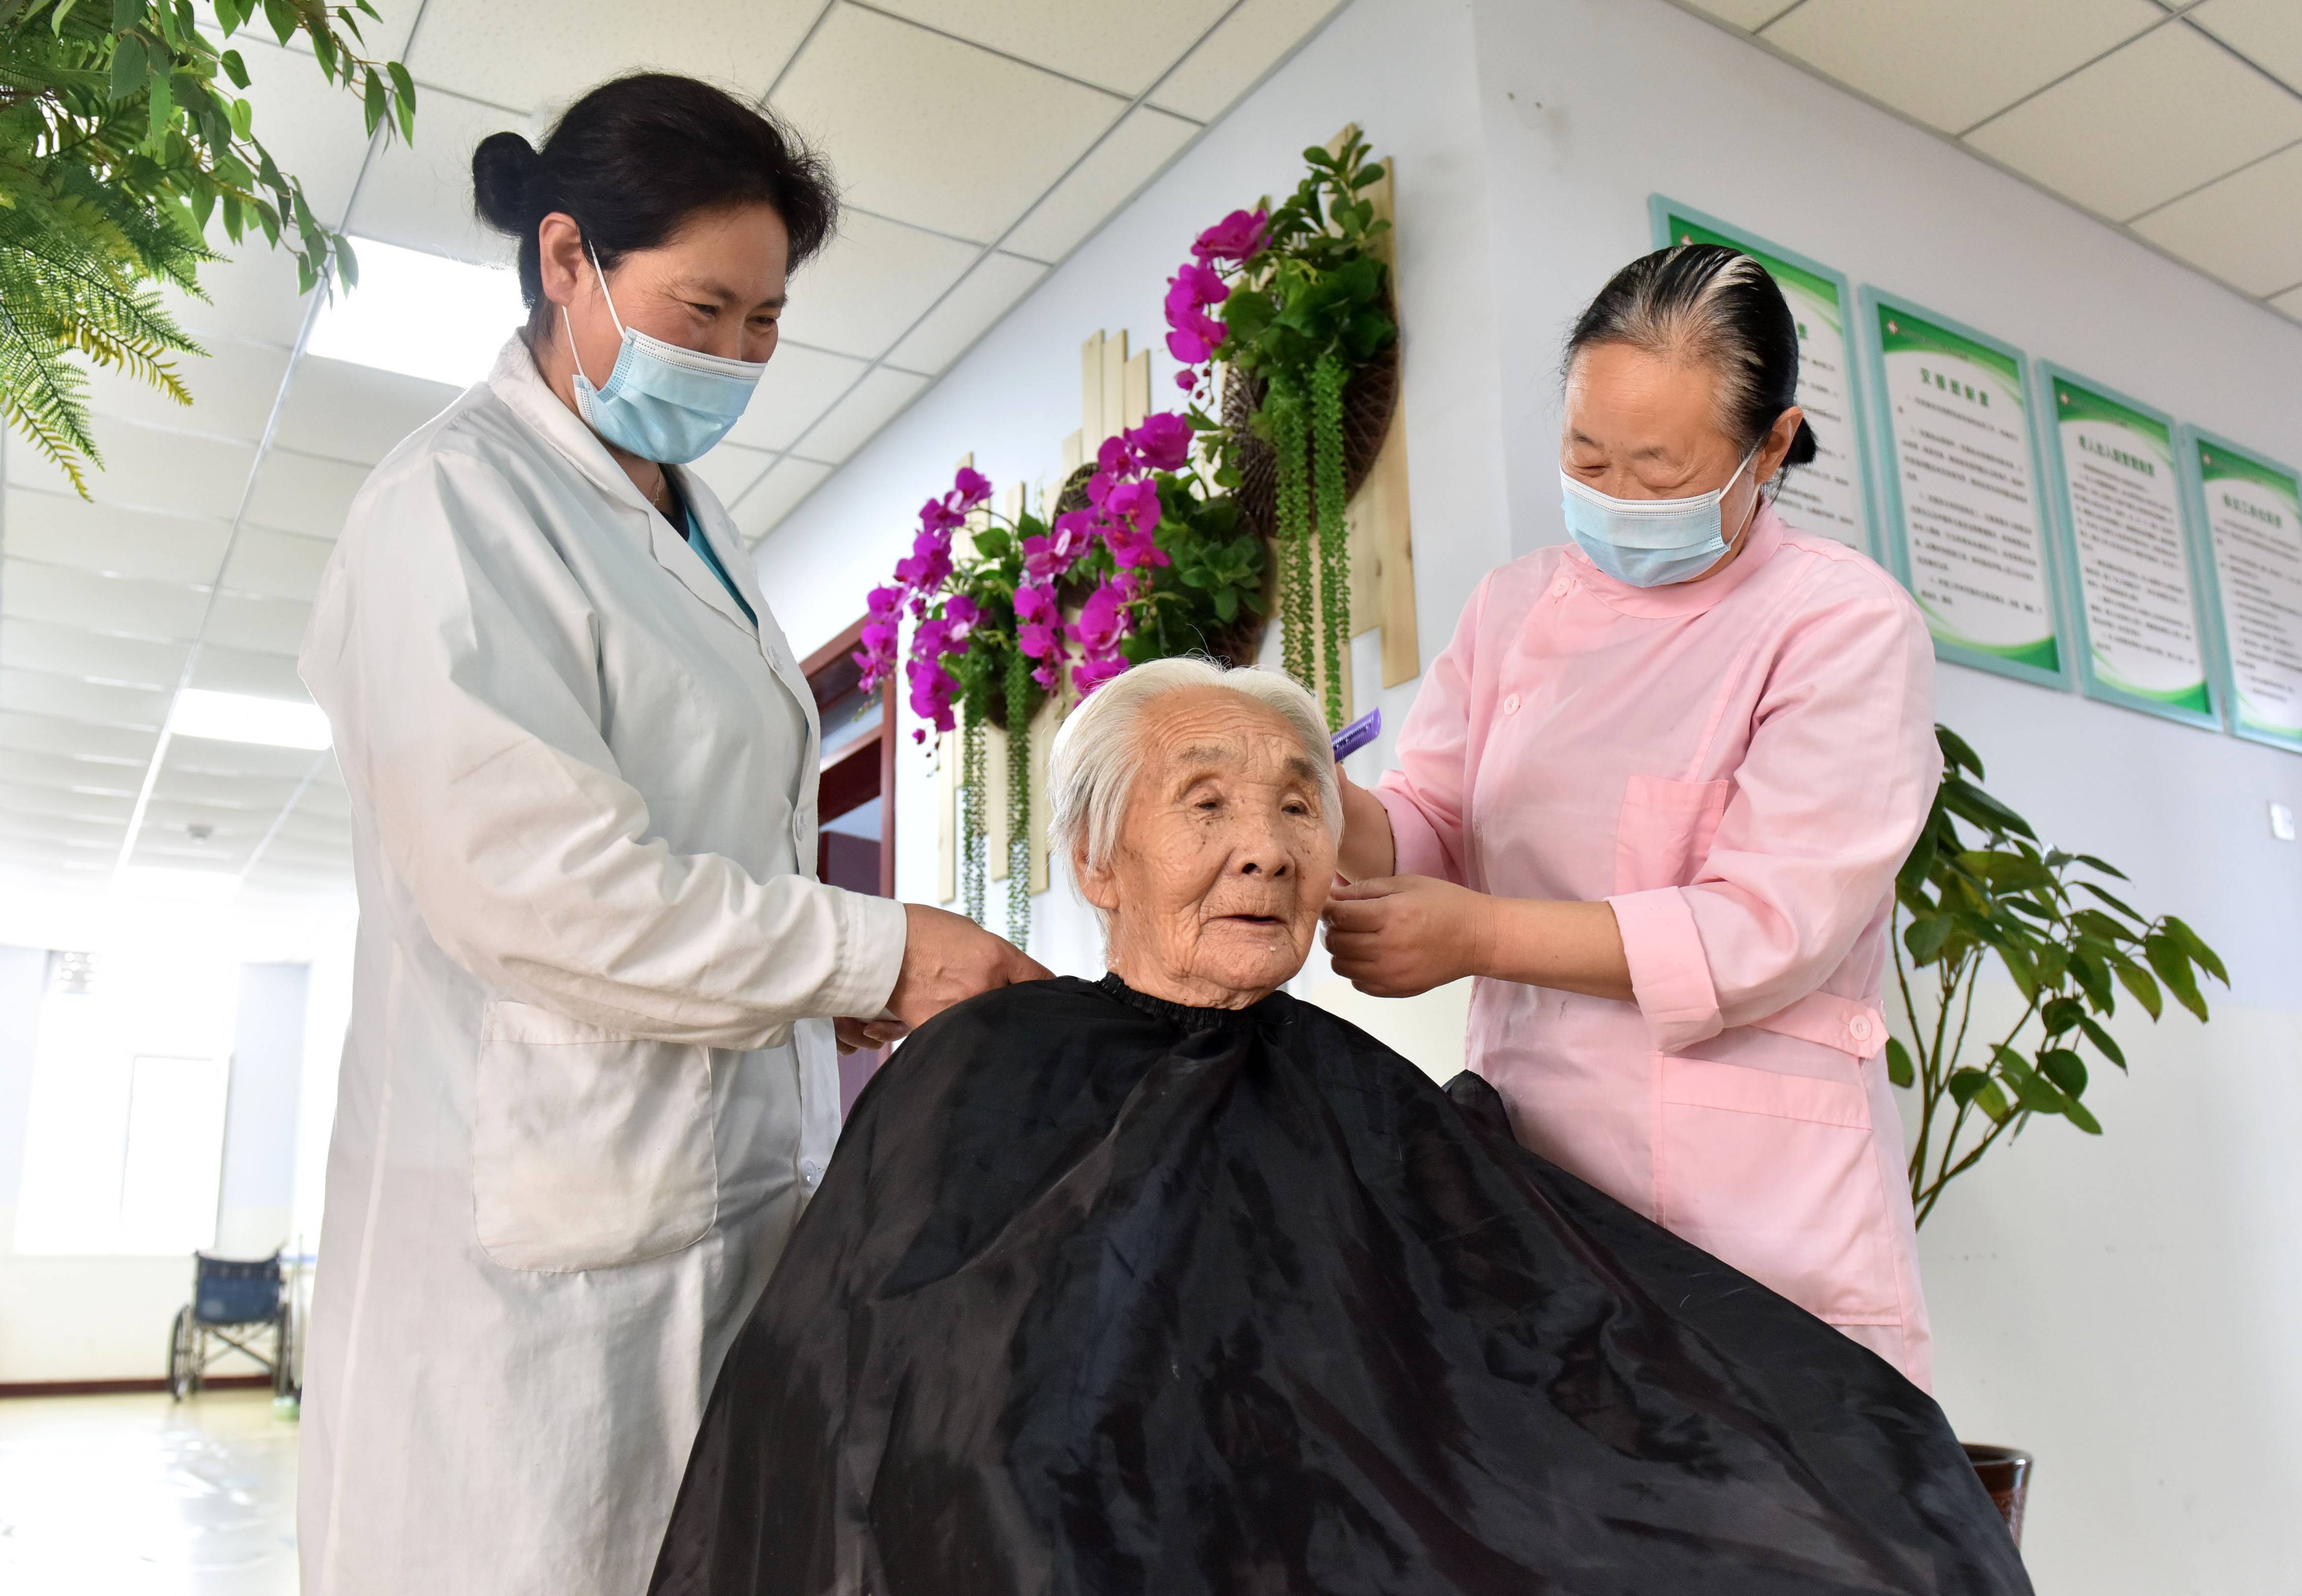 5月25日,河北省邢台市南和区三思镇卫生院医养中心工作人员为老人理发